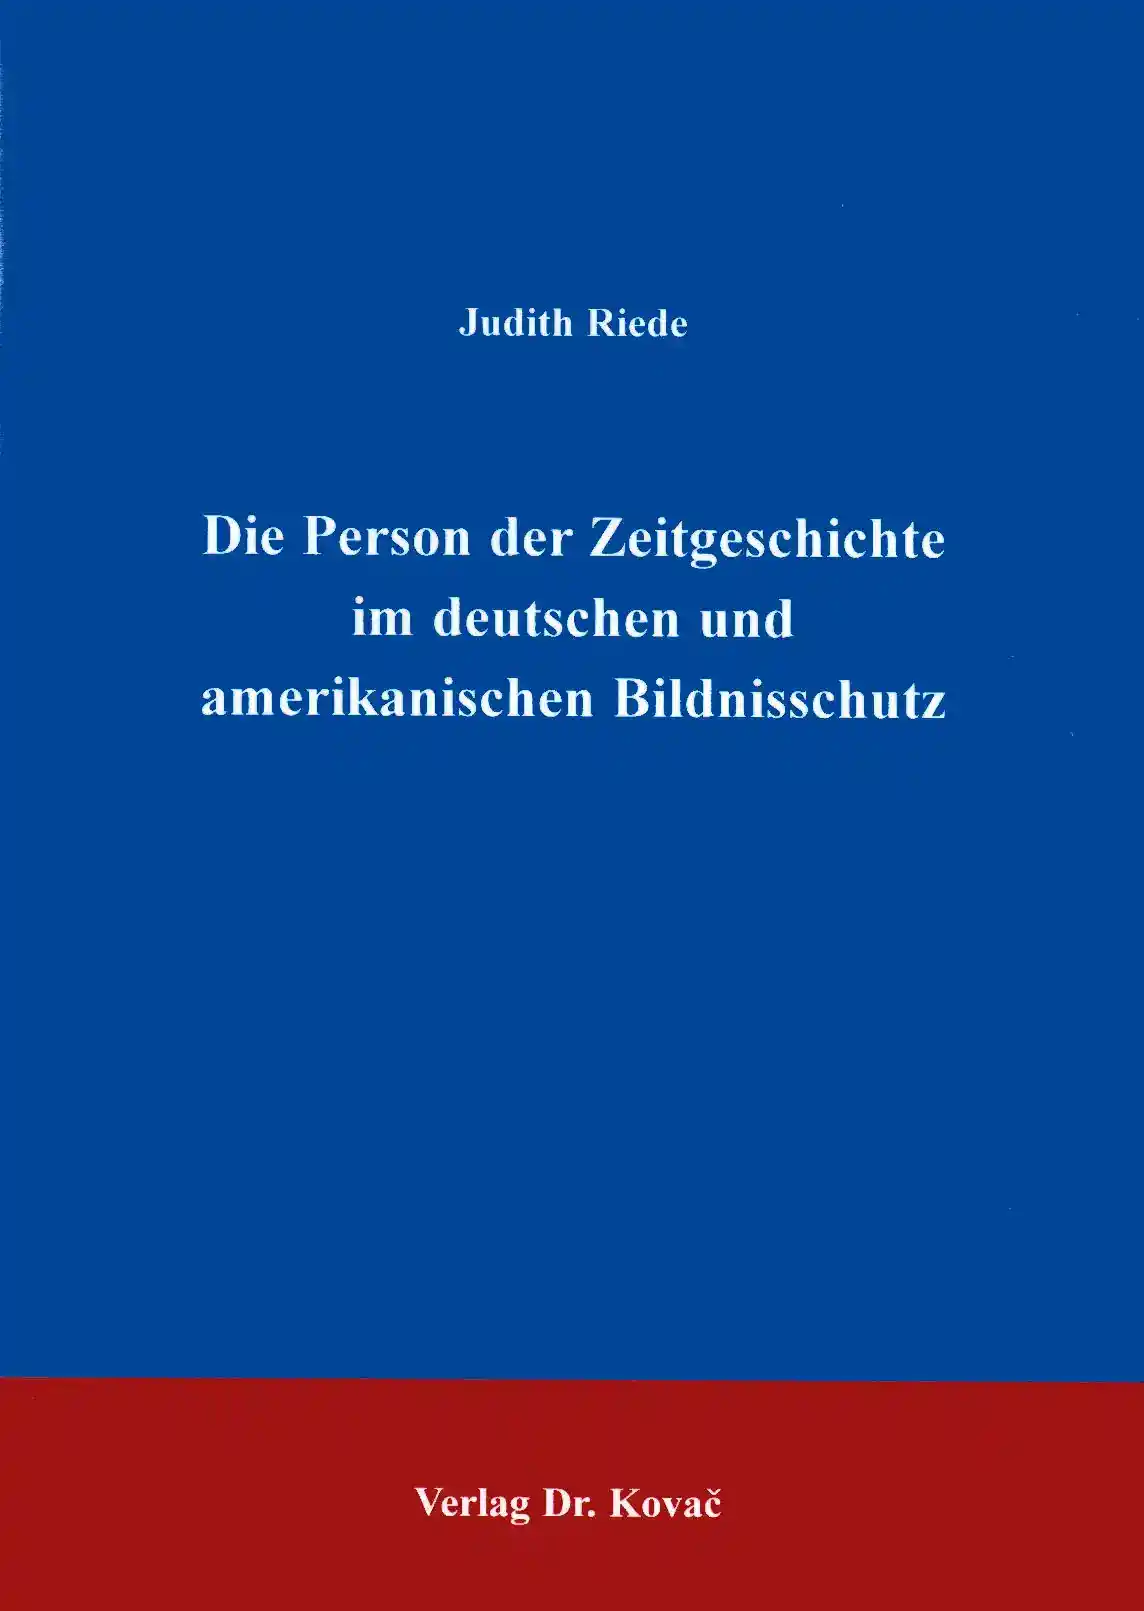 Der Bildnisschutz in Deutschland und den USA unter spezieller Berücksichtigung der Person der Zeitgeschichte bzw. der public figure (Dissertation)